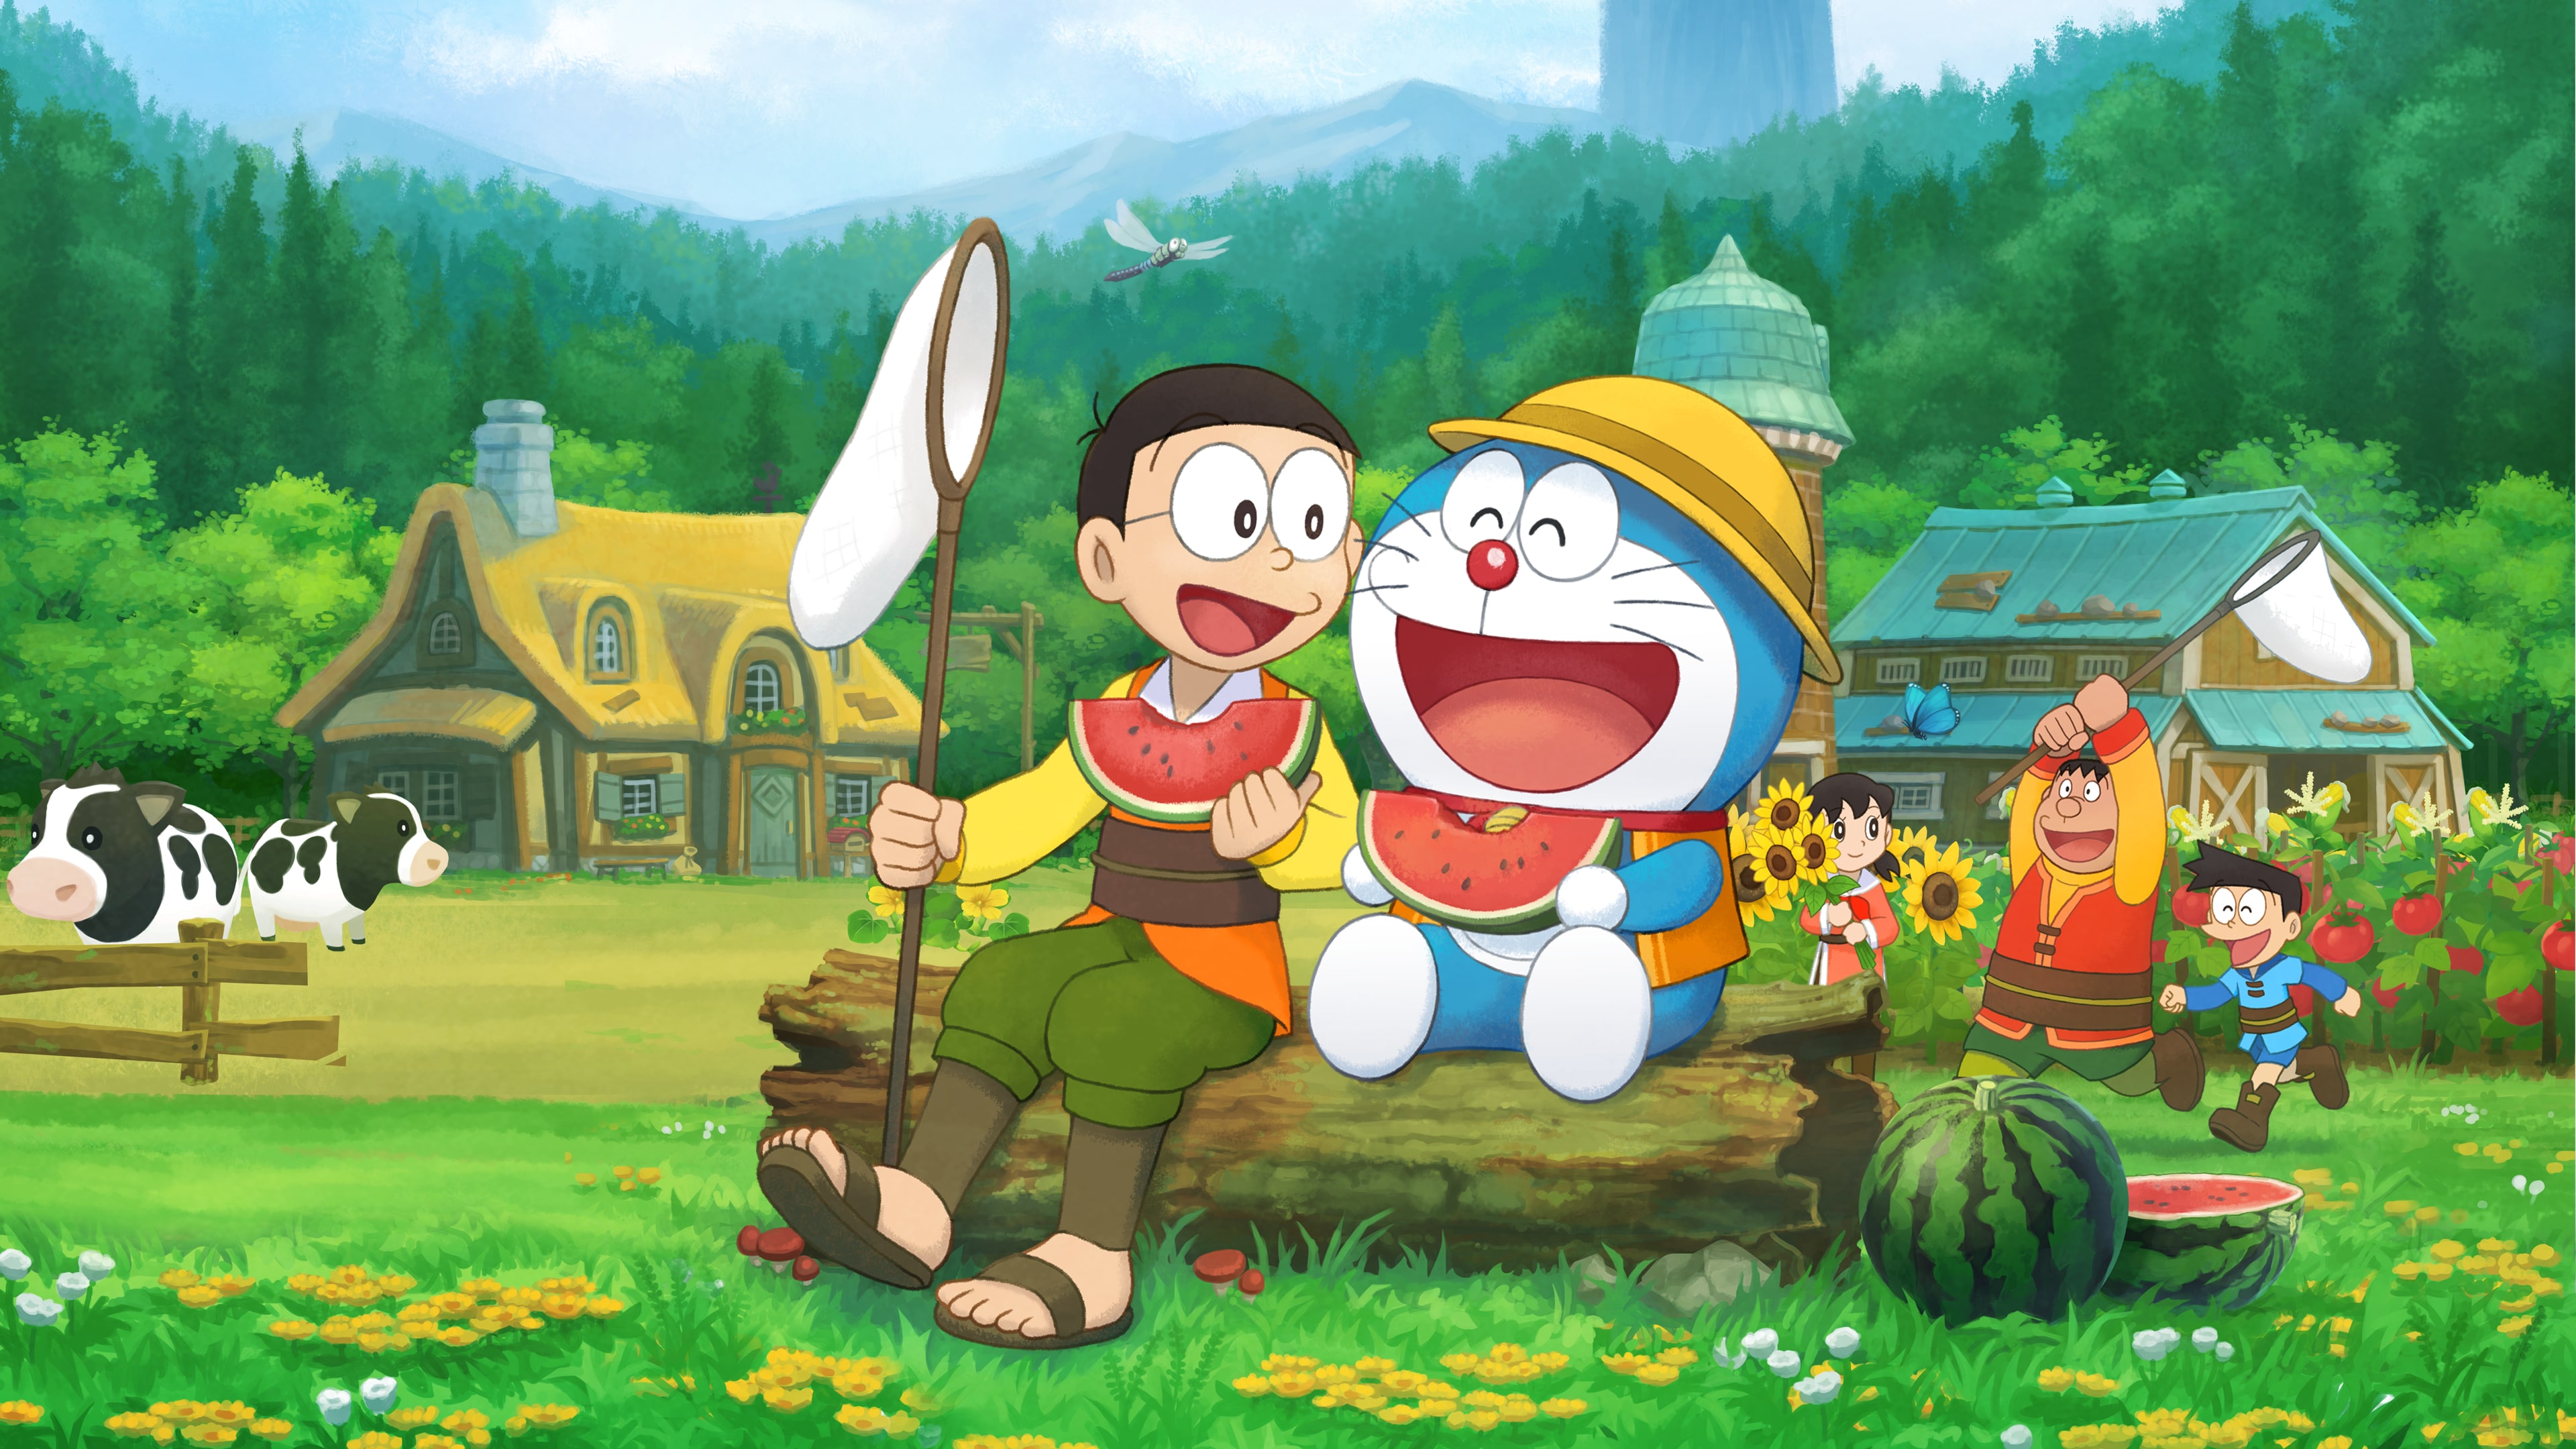 Análise: Doraemon Story of Seasons (Multi) é uma aventura rural que demanda  muita dedicação - GameBlast